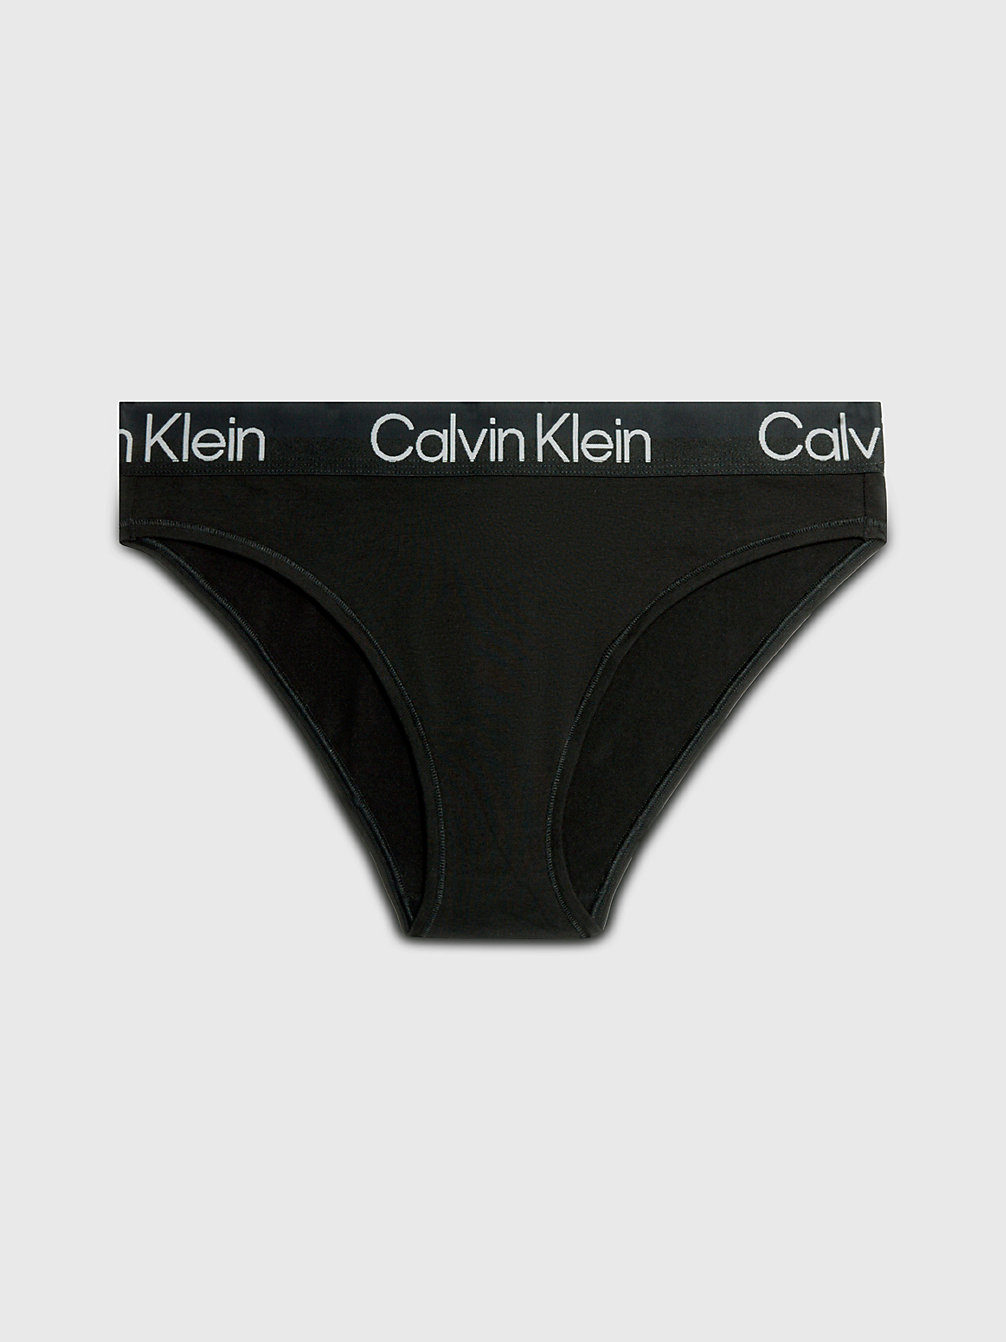 BLACK Bikini Brief - Modern Structure undefined women Calvin Klein